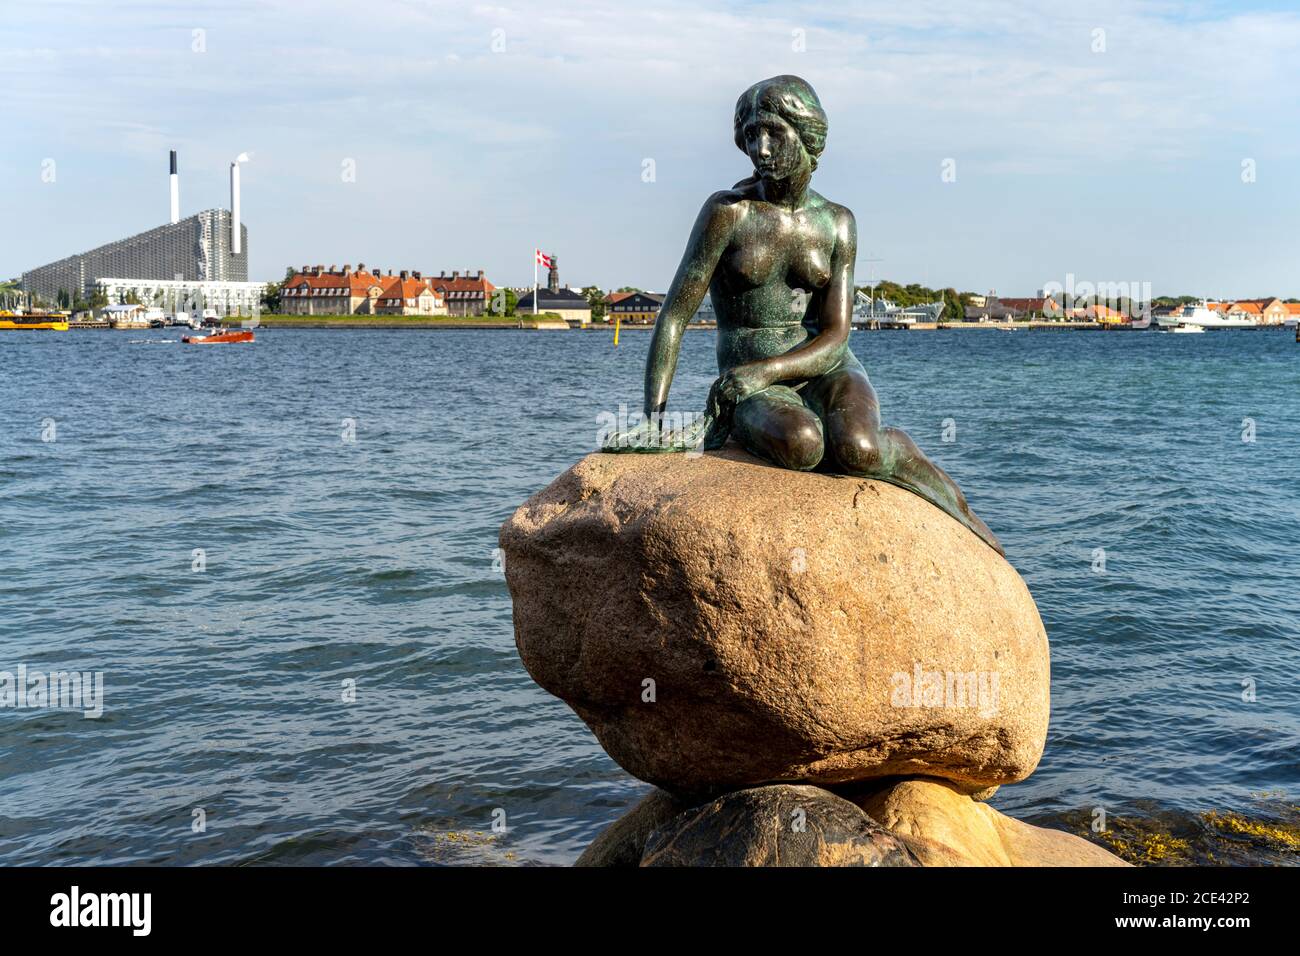 Die berühmte Bronzefigur Die Kleine Meerjungfrau - Den lille Havfrue - an der Uferpromenade Langelinie, Kopenhagen, Dänemark, Europa  |  the famous br Stock Photo